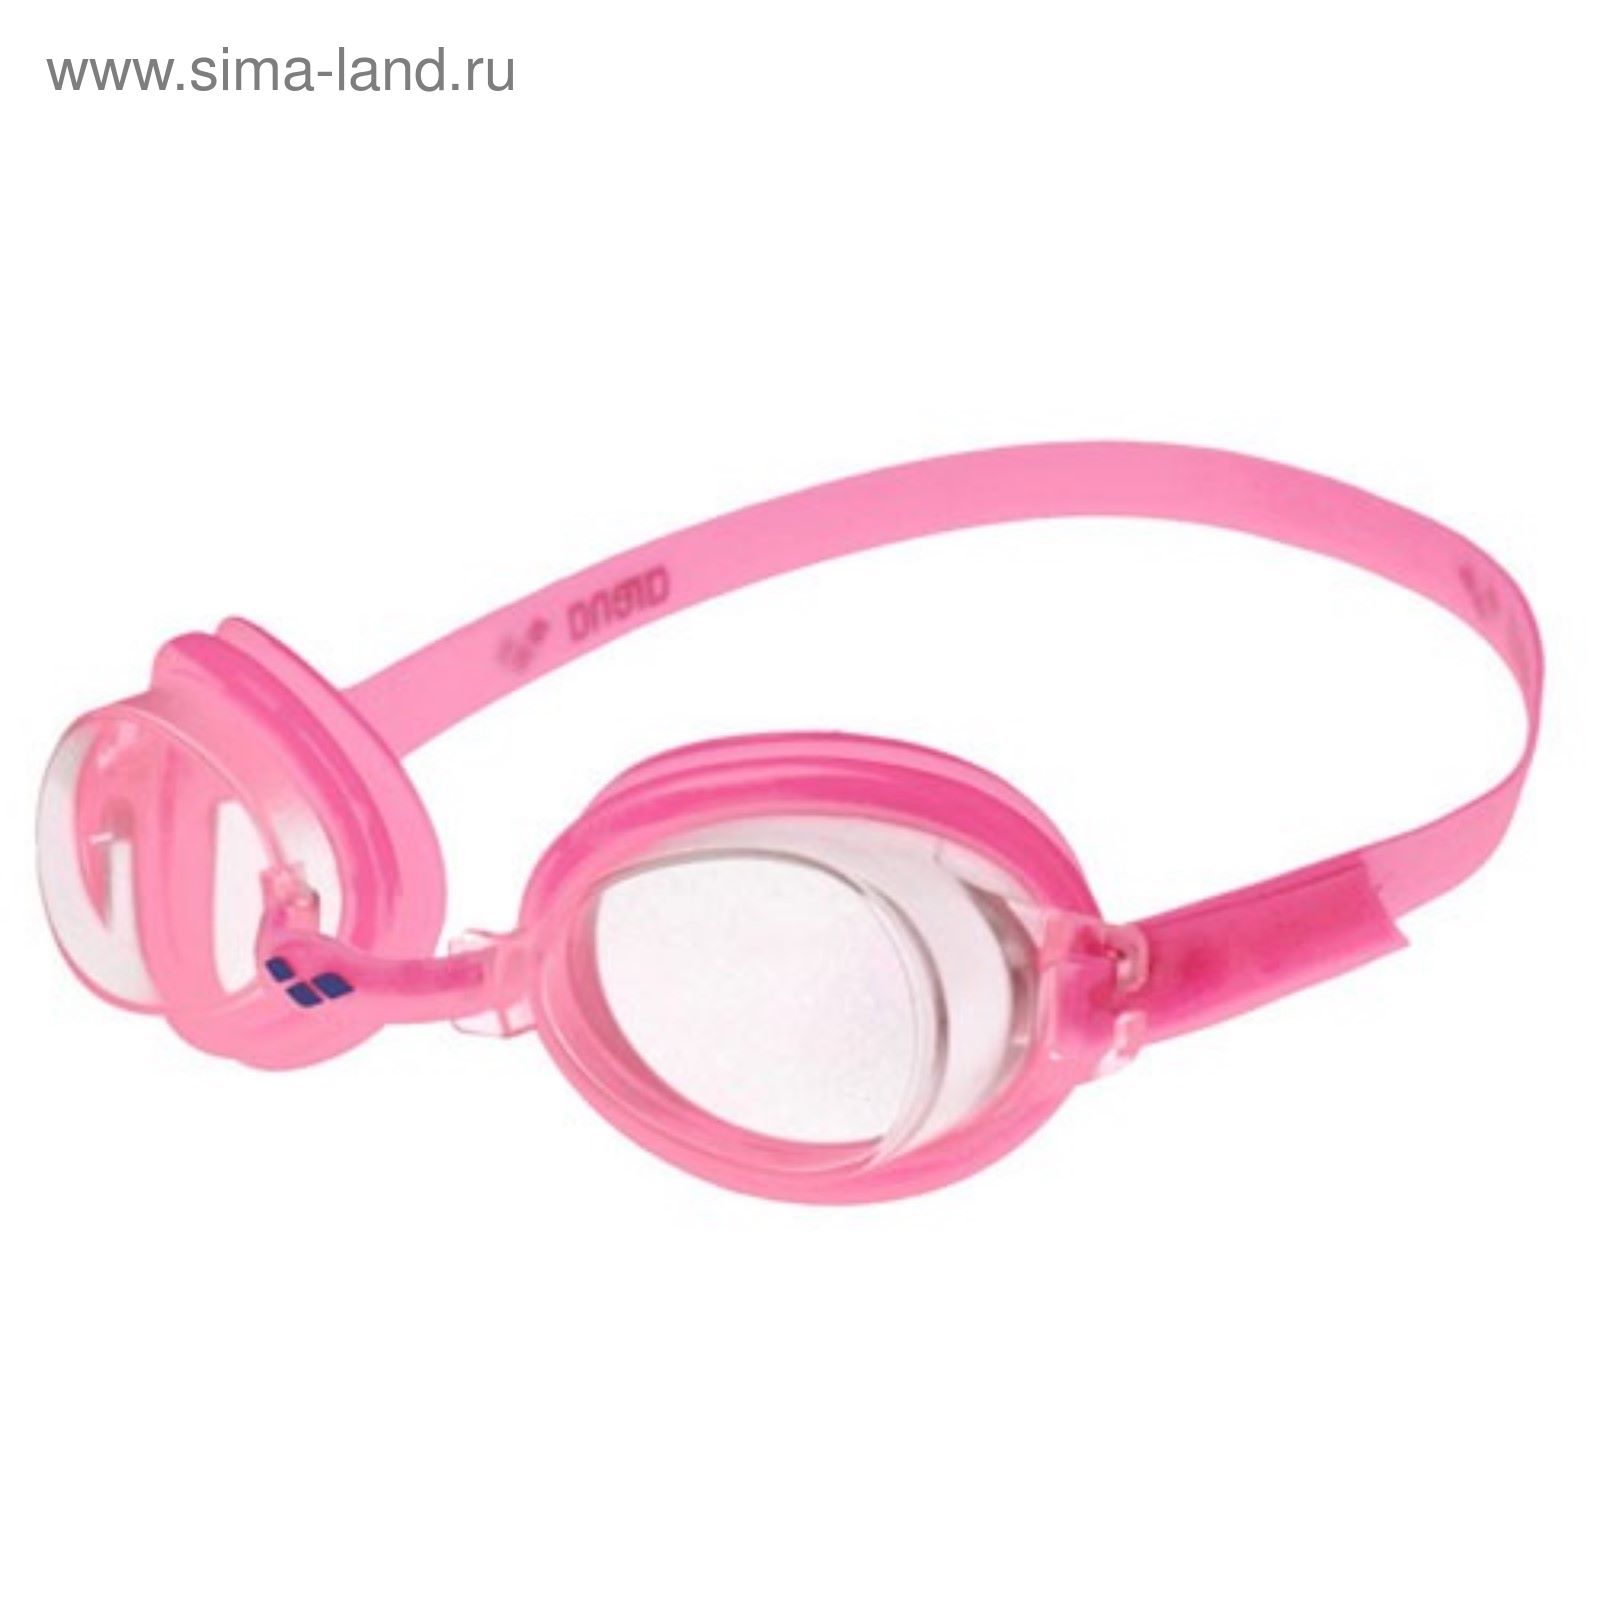 Очки для плавания детские ARENA Bubble 3 Jr, прозрачные линзы, розовая оправа